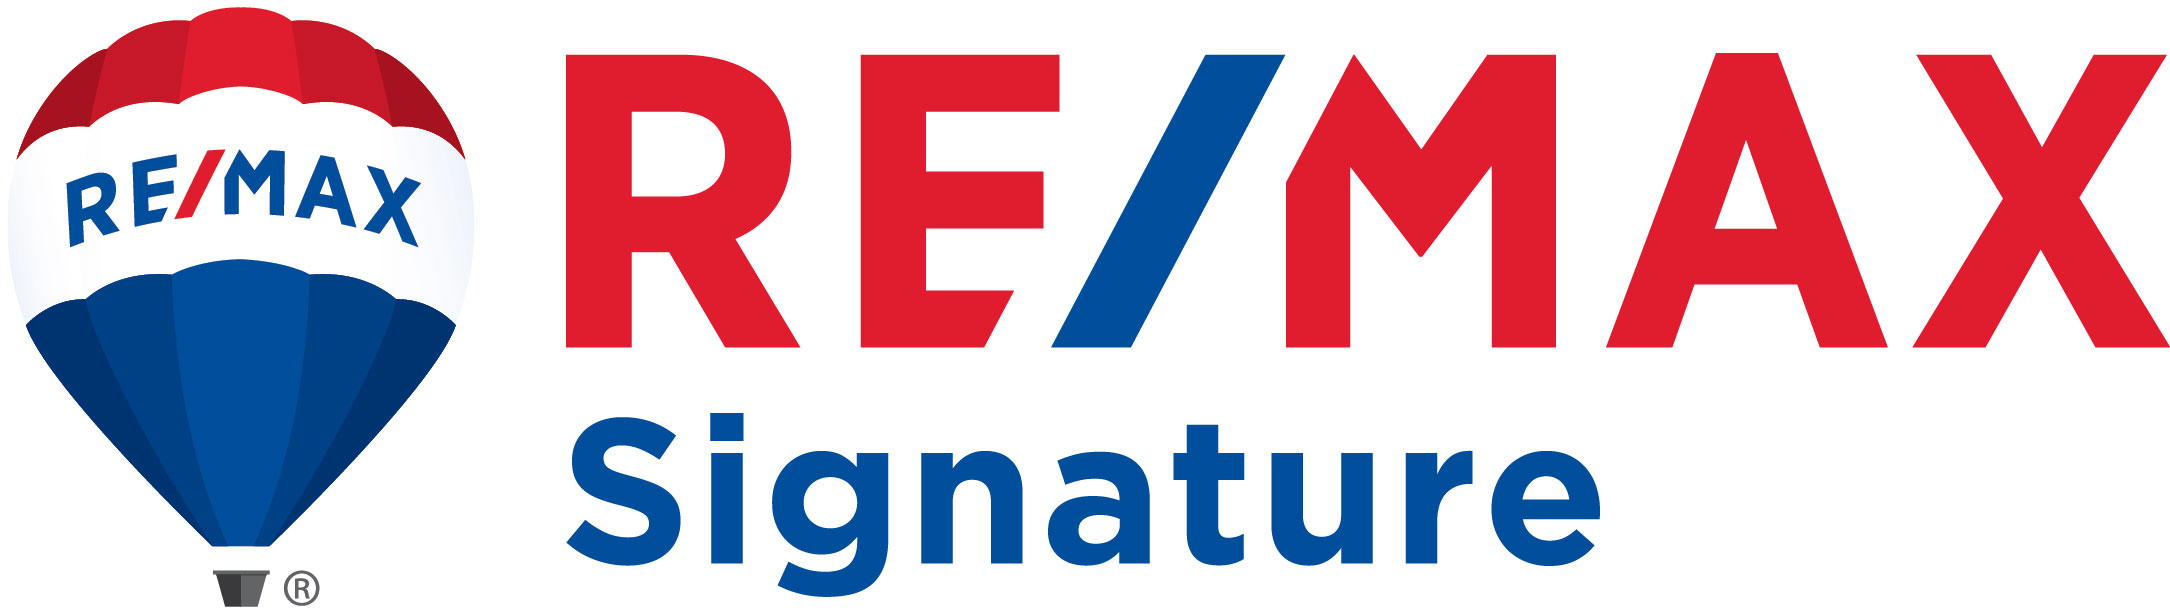 RE/MAX Signature